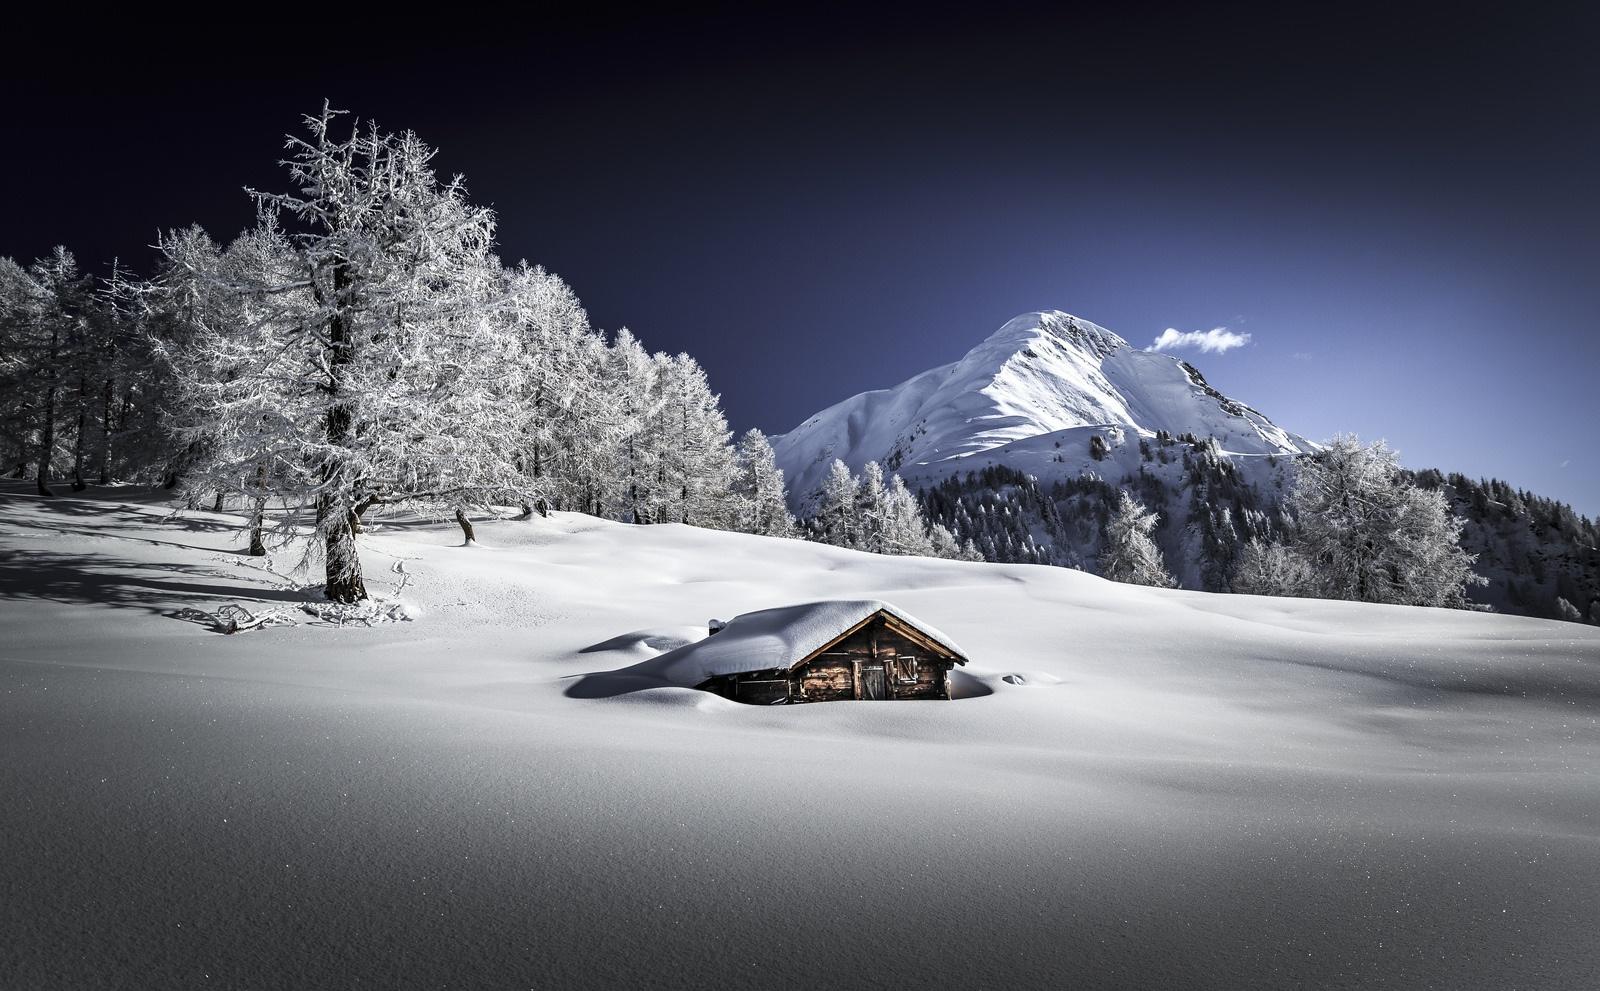 Switzerland: The Winter Wonderland